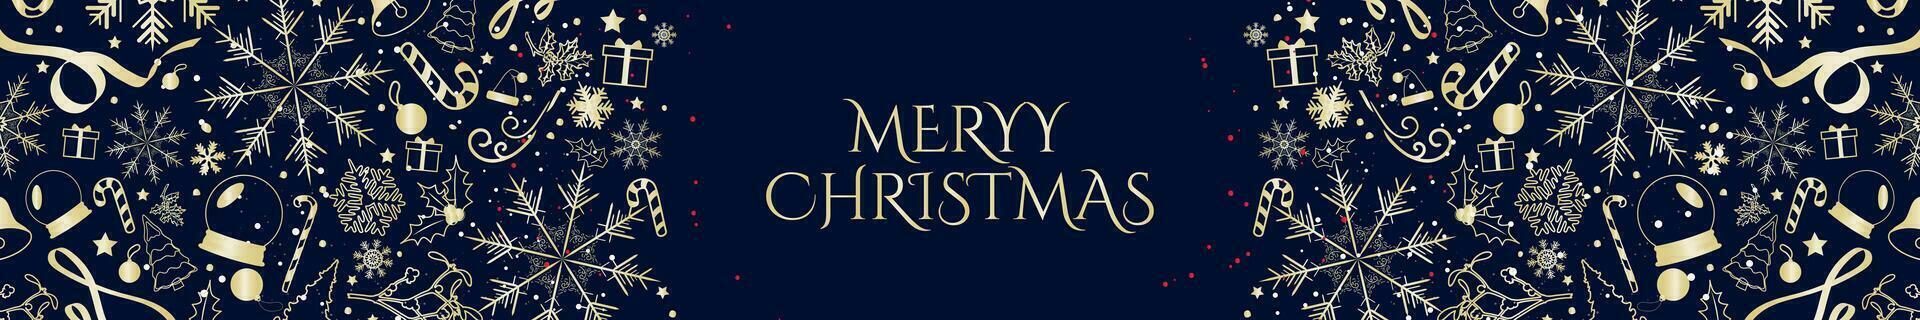 gyllene jul rubrik mall på blå bakgrund. dekorativ och elegant jul horisontell baner med guld xmas mönster och ikoner. glad jul. vektor illustration. eps 10.